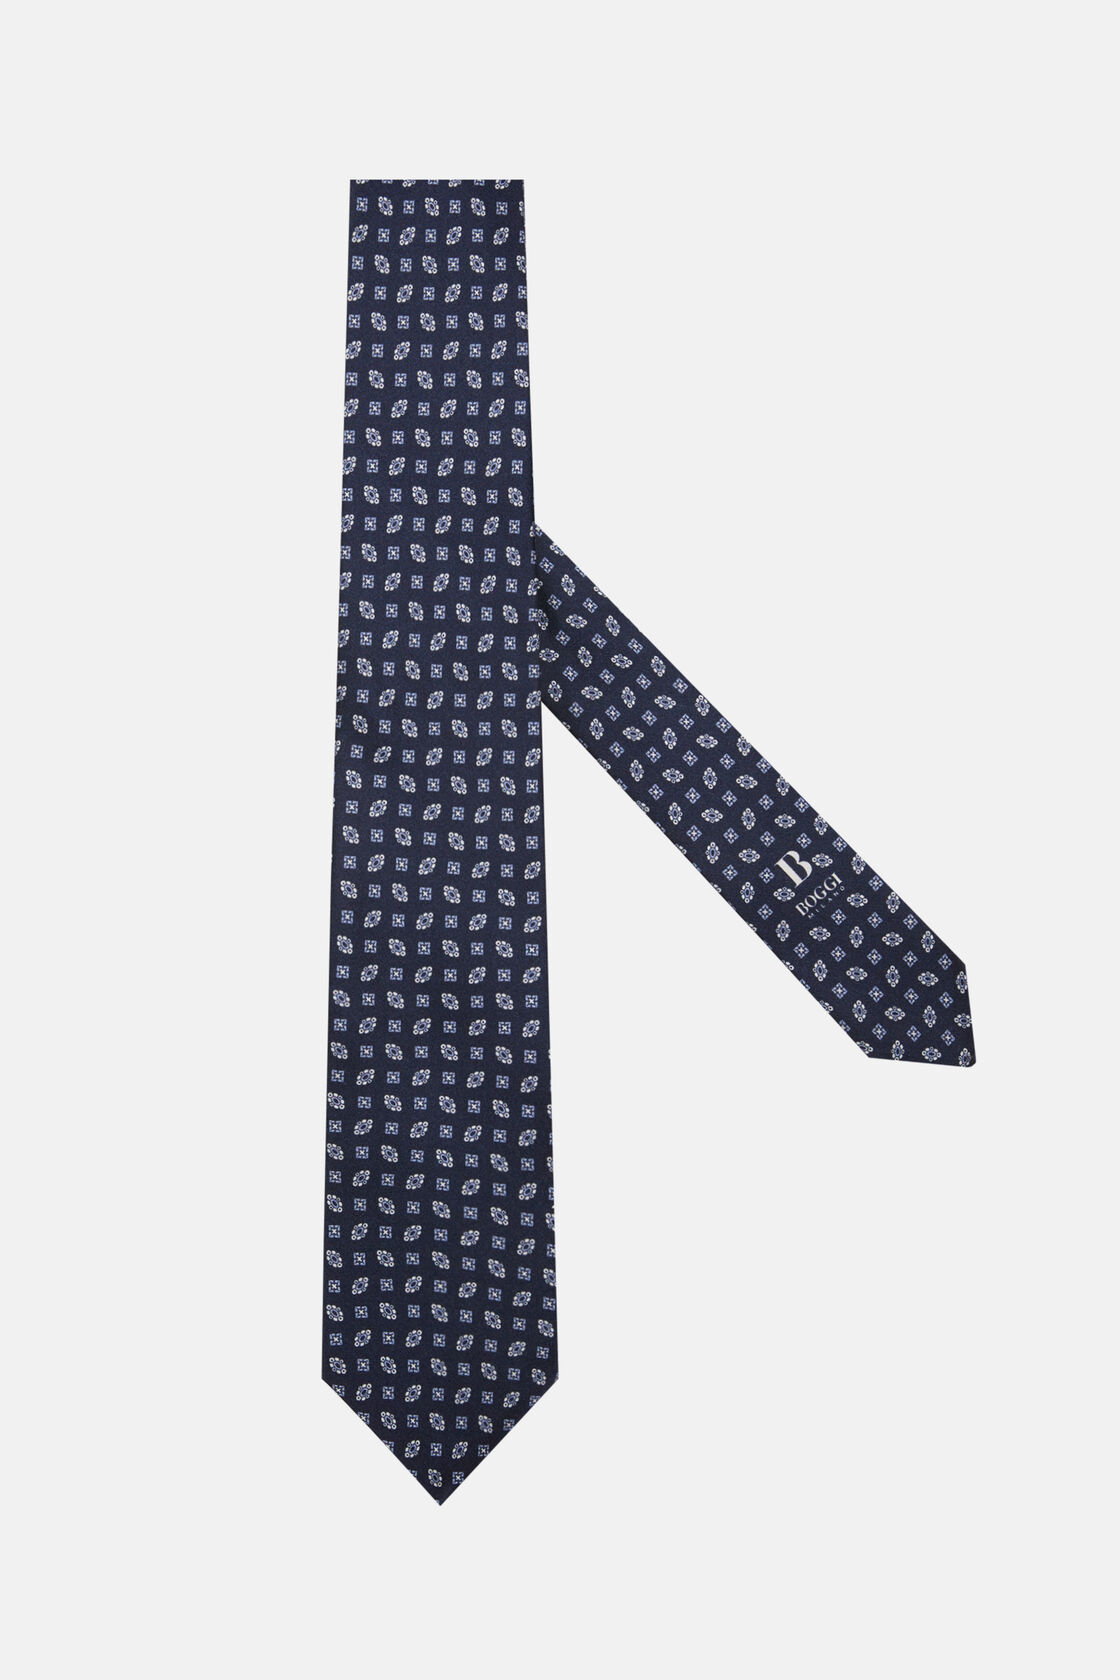 Gravata de Seda com Padrão Geométrico, Navy blue, hi-res